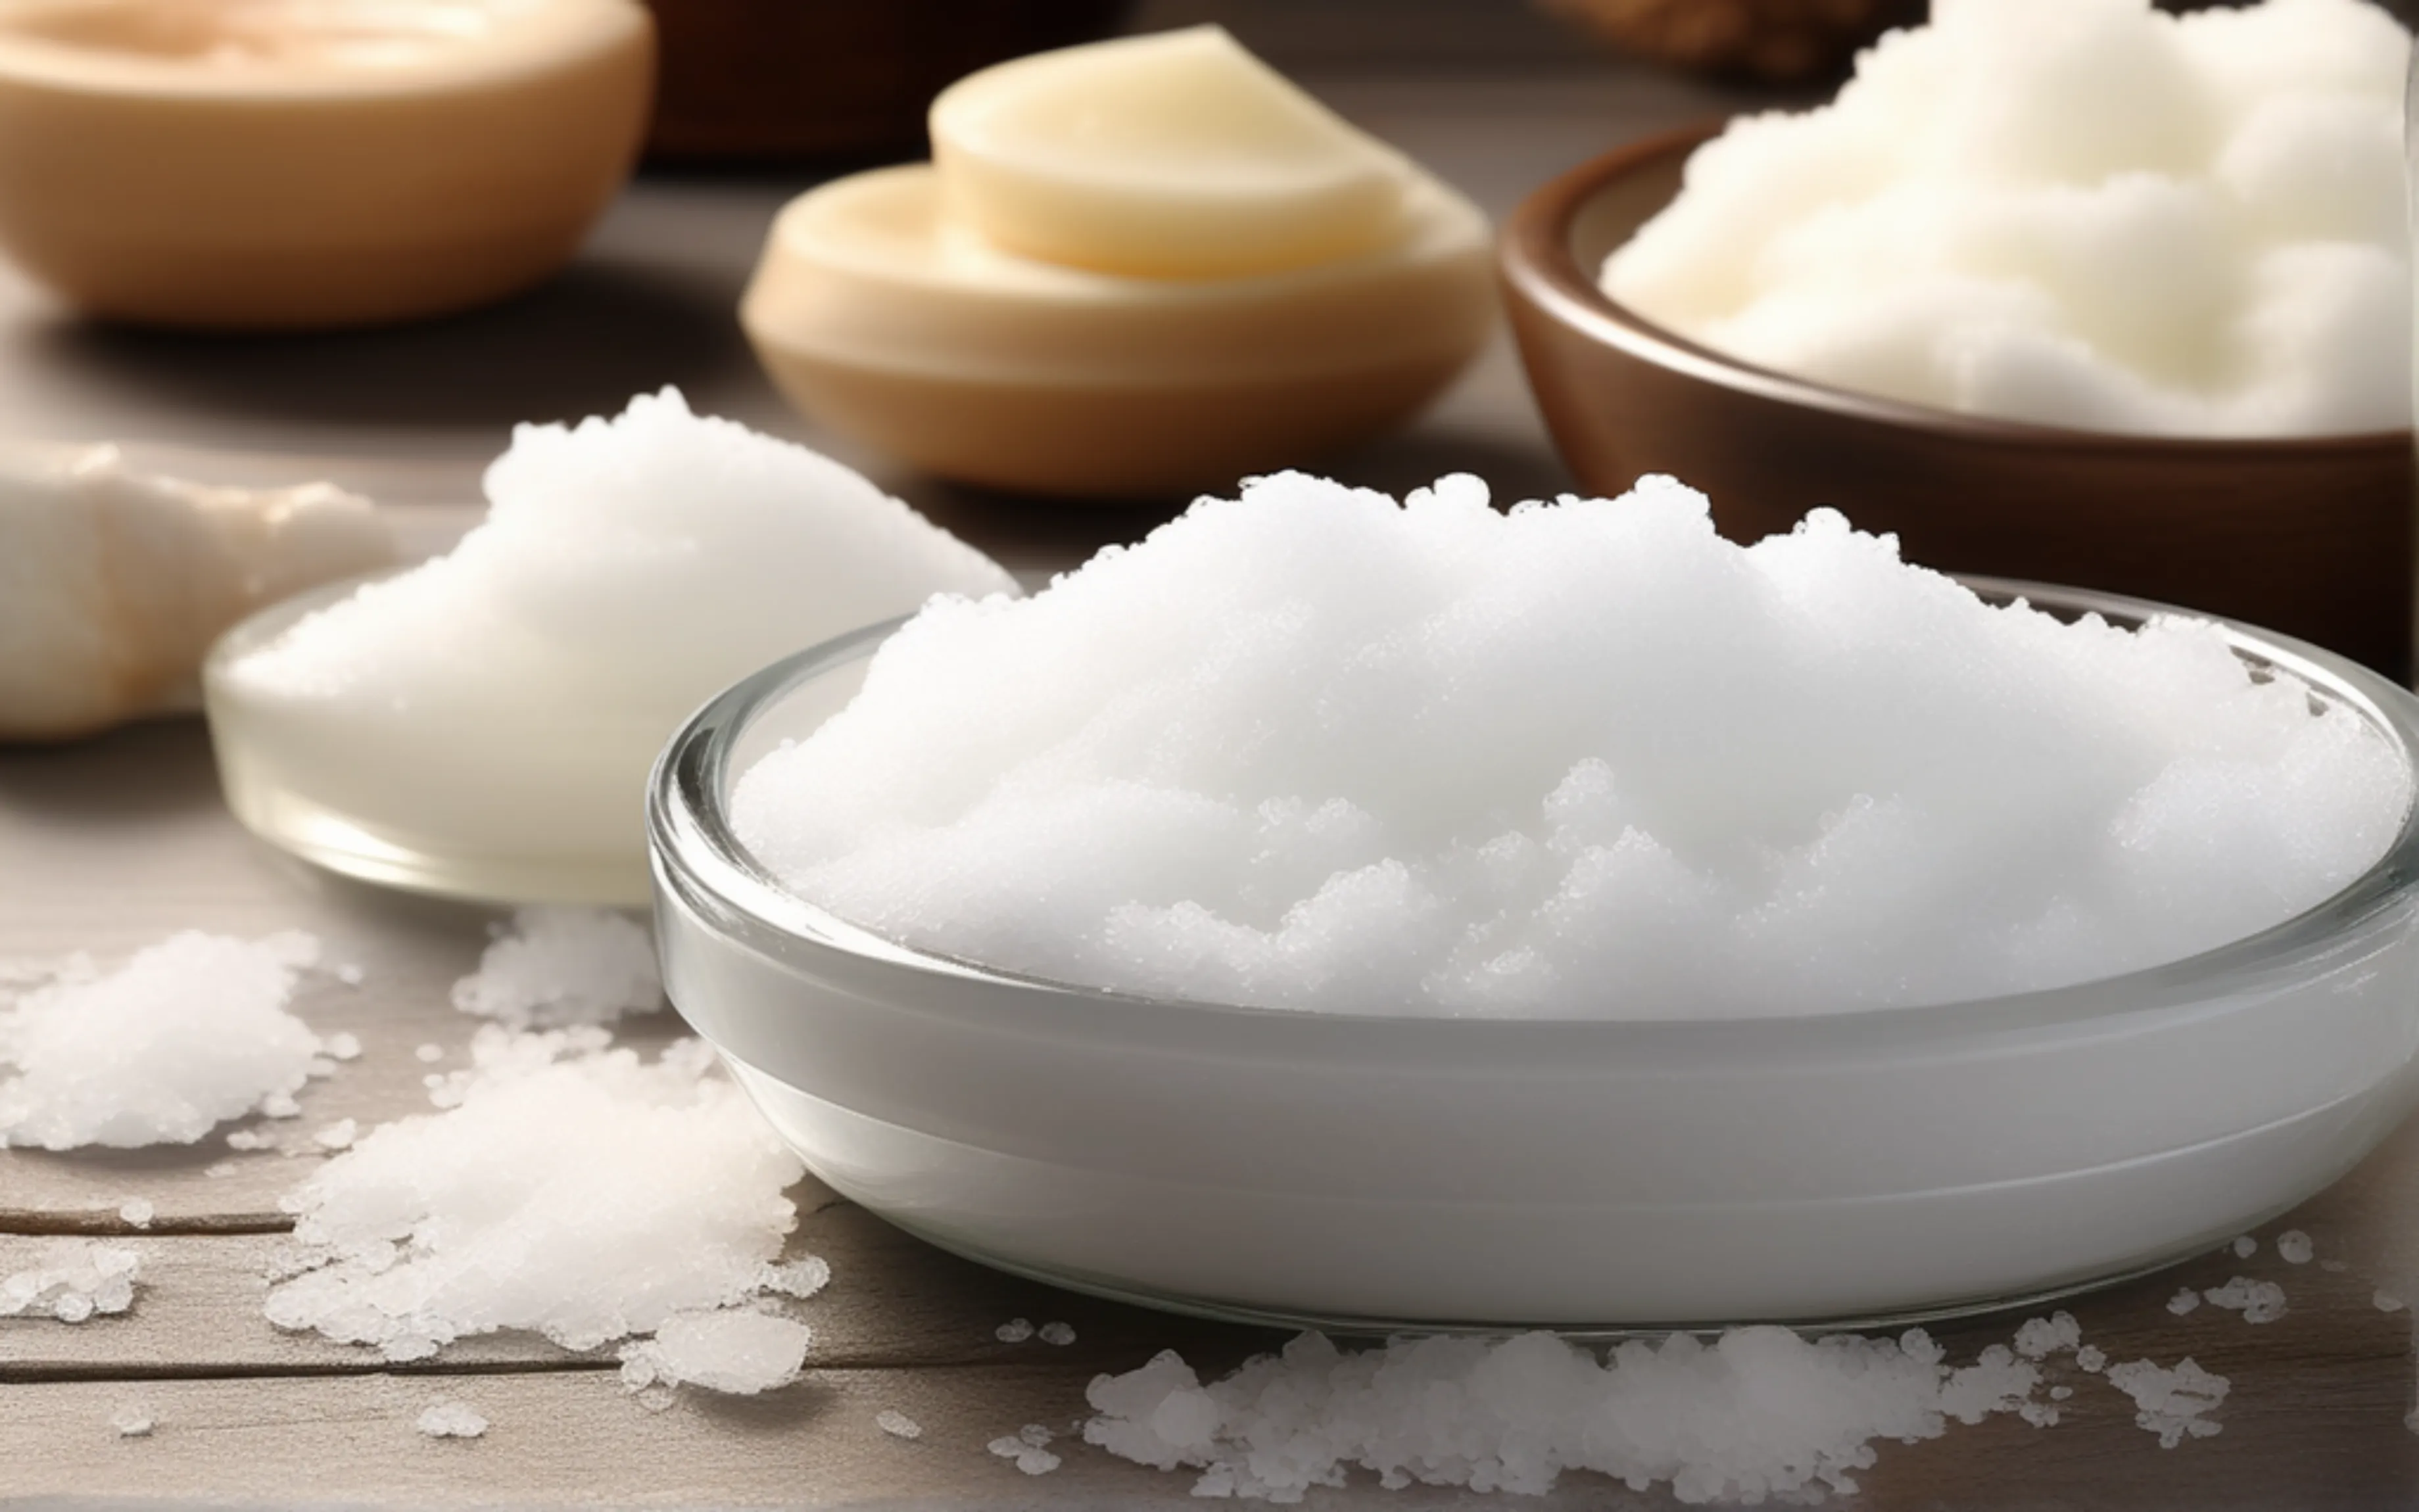 Преимущества гималайской соли в солевых скрабах: как она влияет на кожу и какие результаты можно ожидать